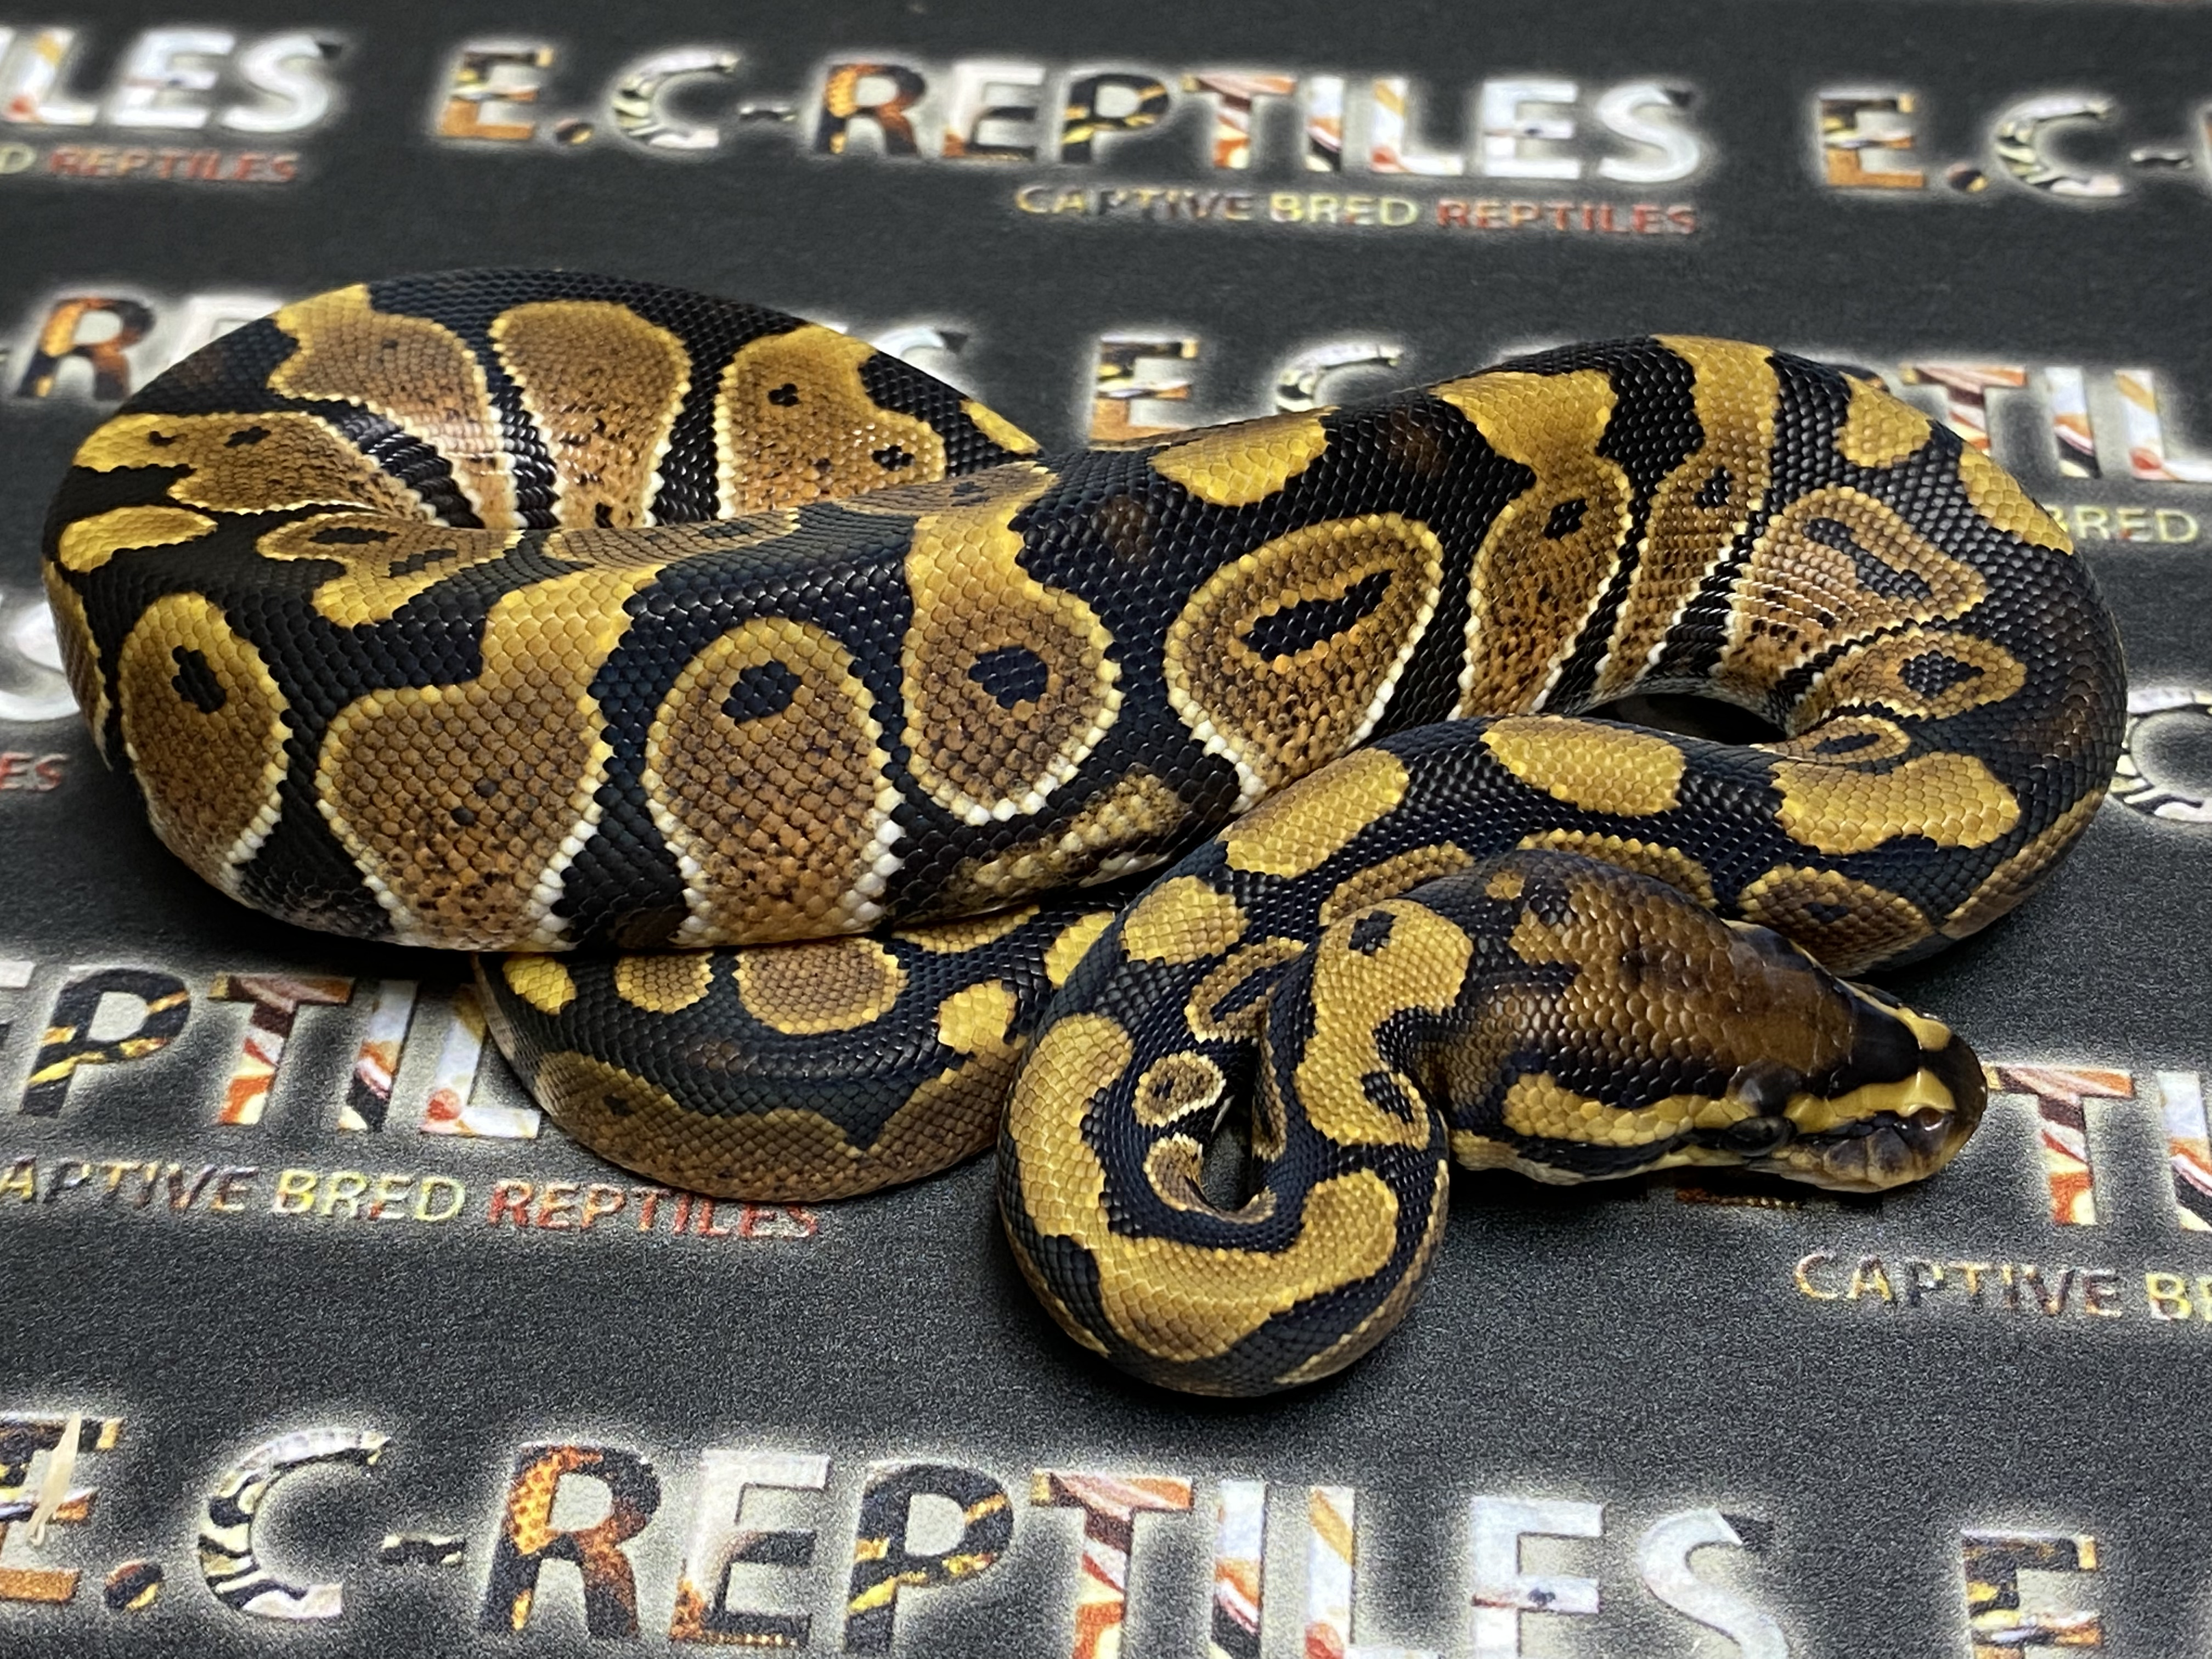 FNR Vanilla Ball Python by E.c-reptiles